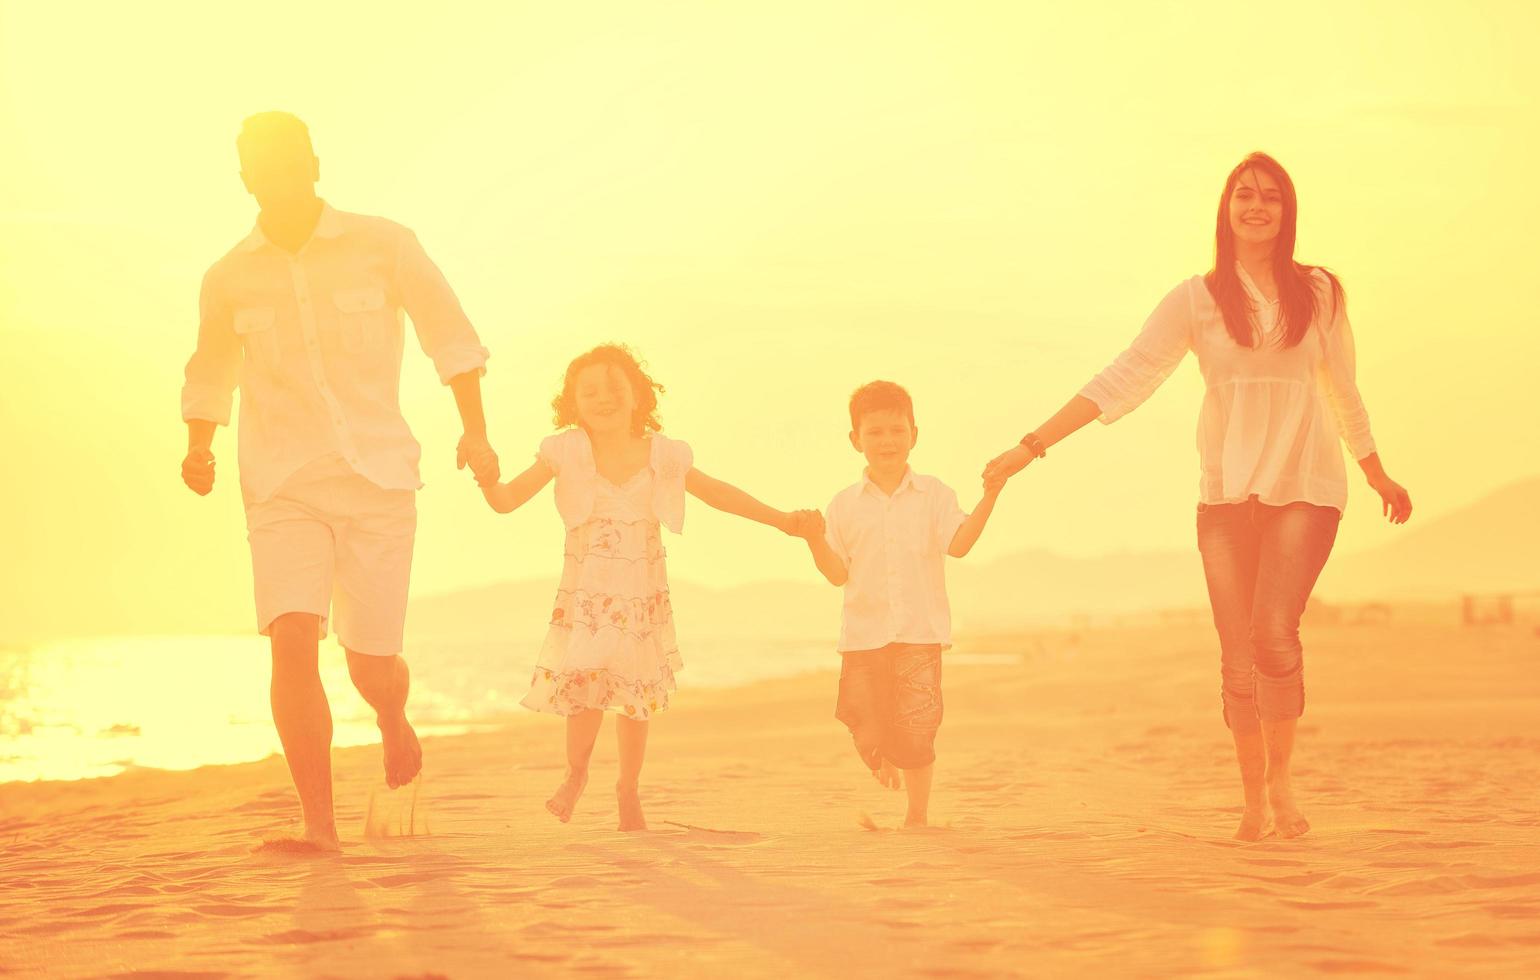 glückliche junge familie hat spaß am strand bei sonnenuntergang foto